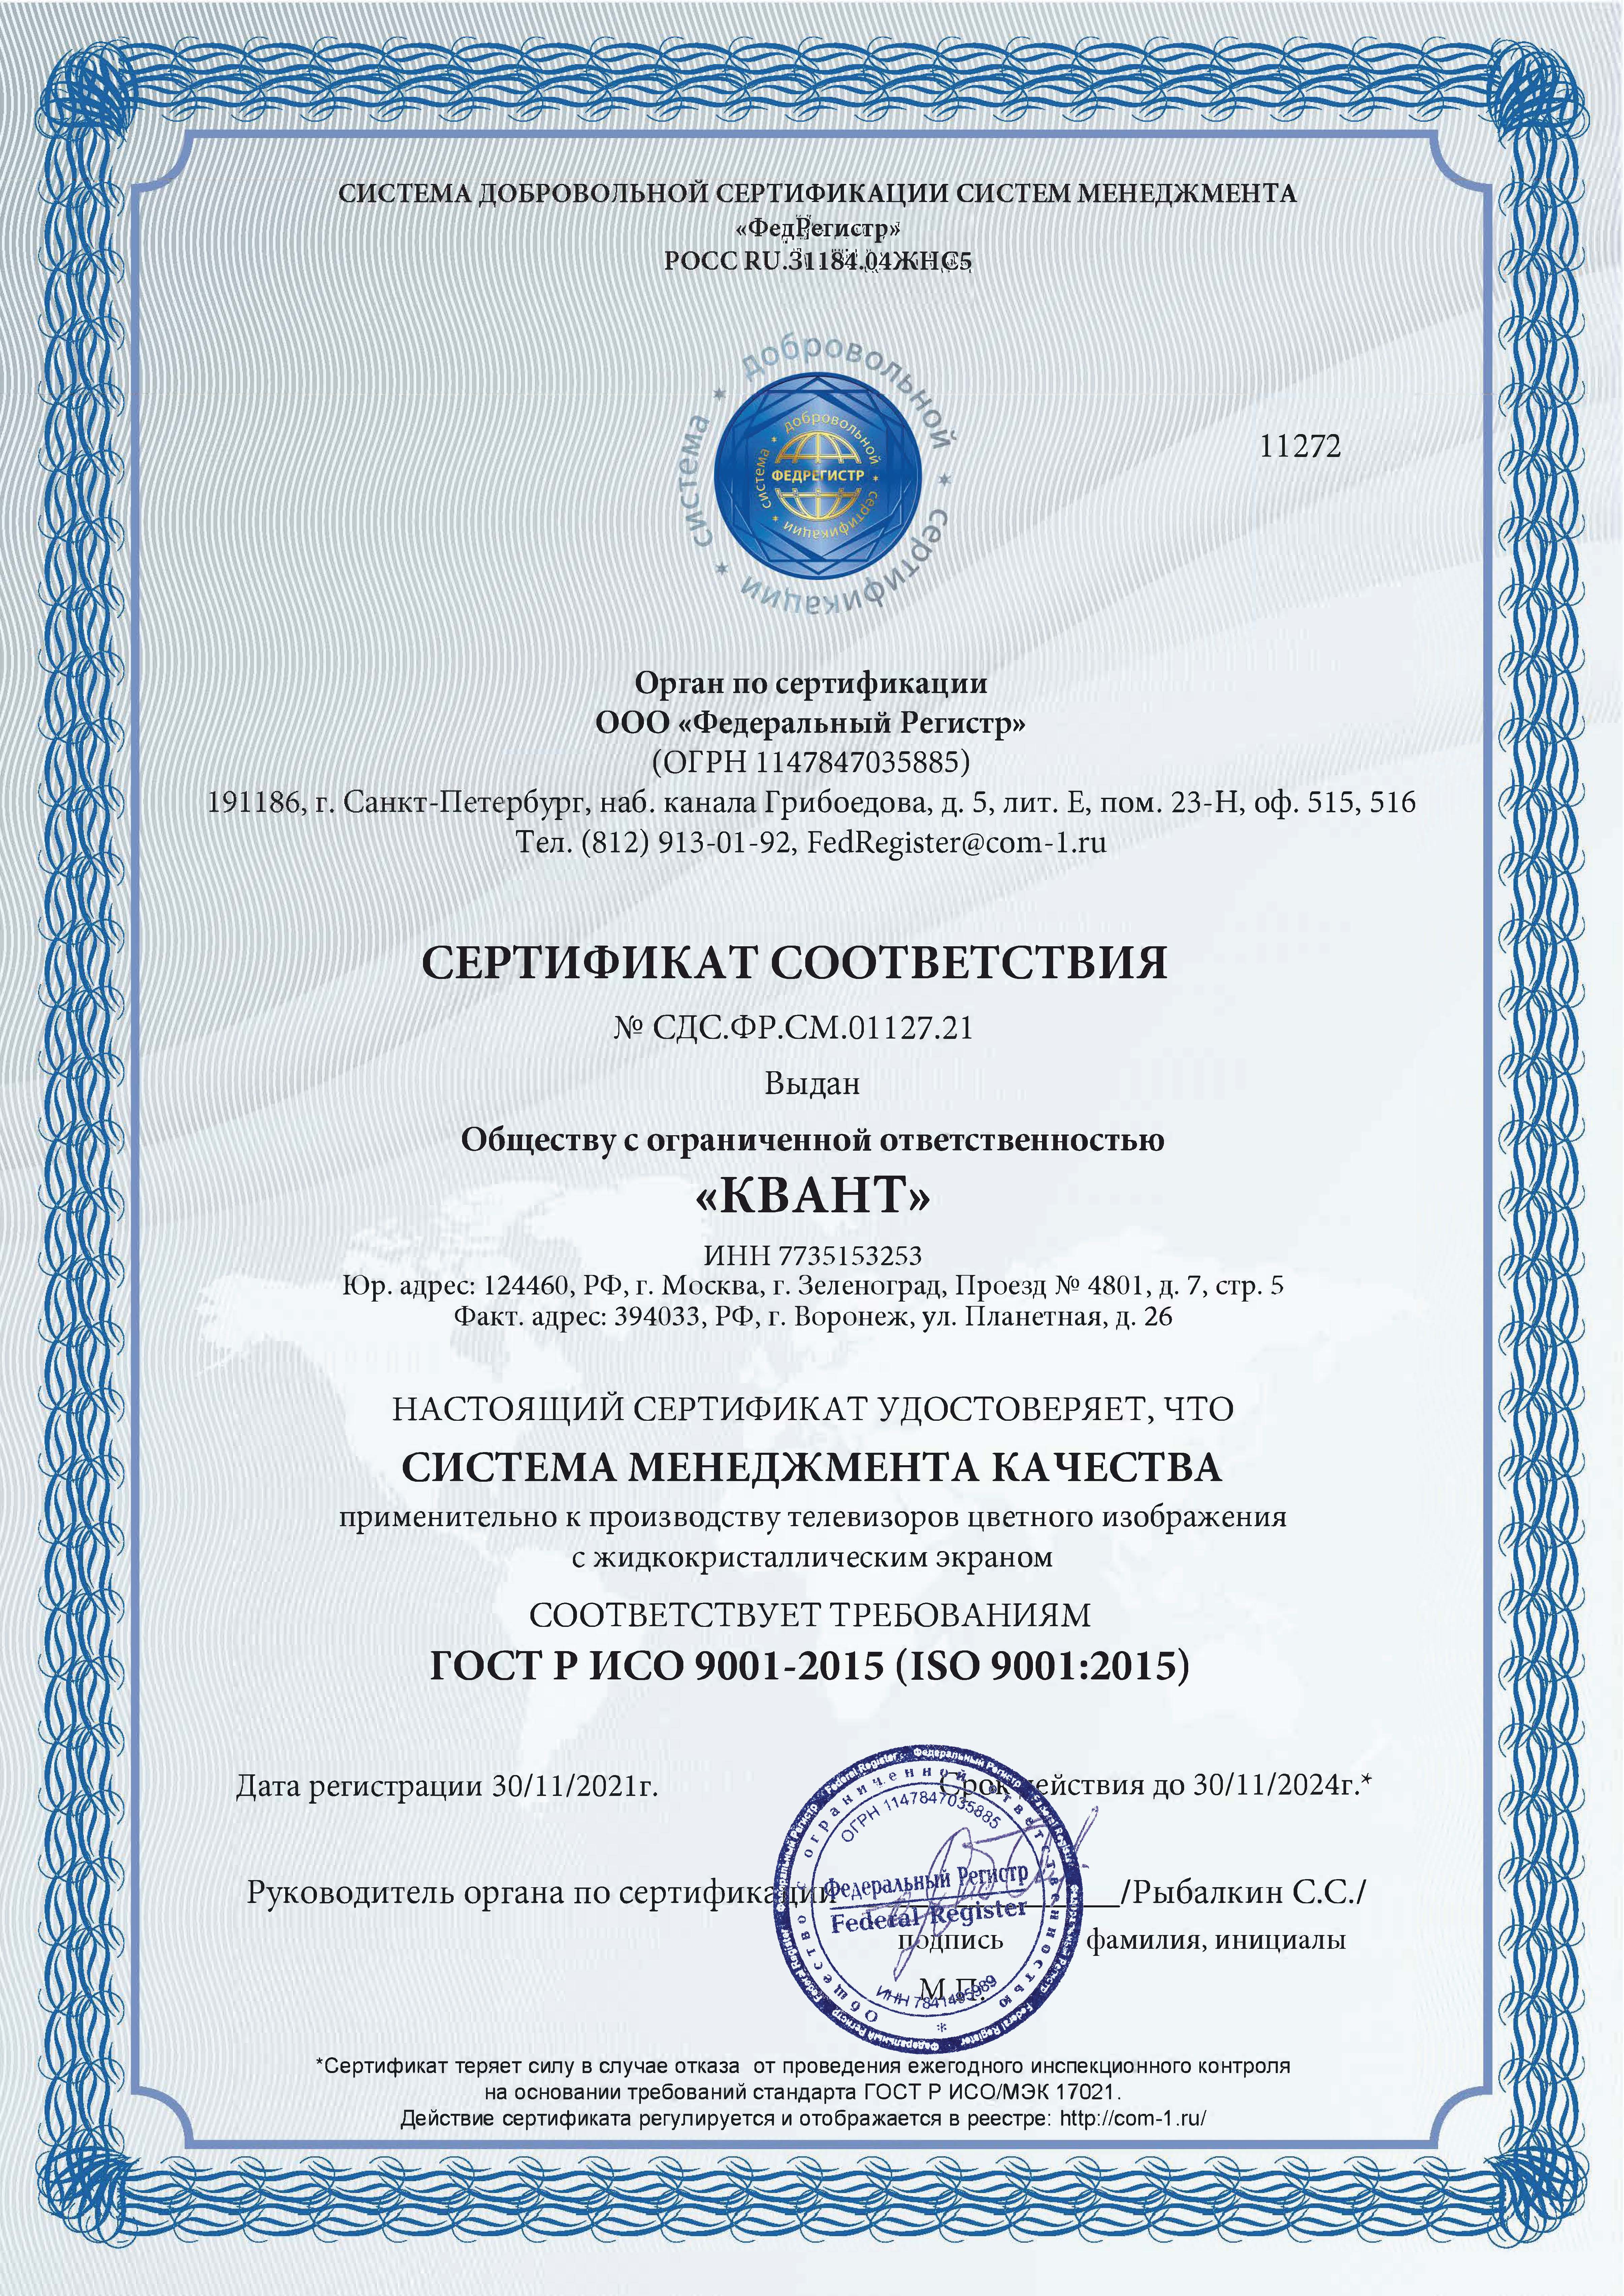 Сертификат соответствия системы менеджмента применительно к производству телевизоров с LCD требованиям ISO 9001:2015